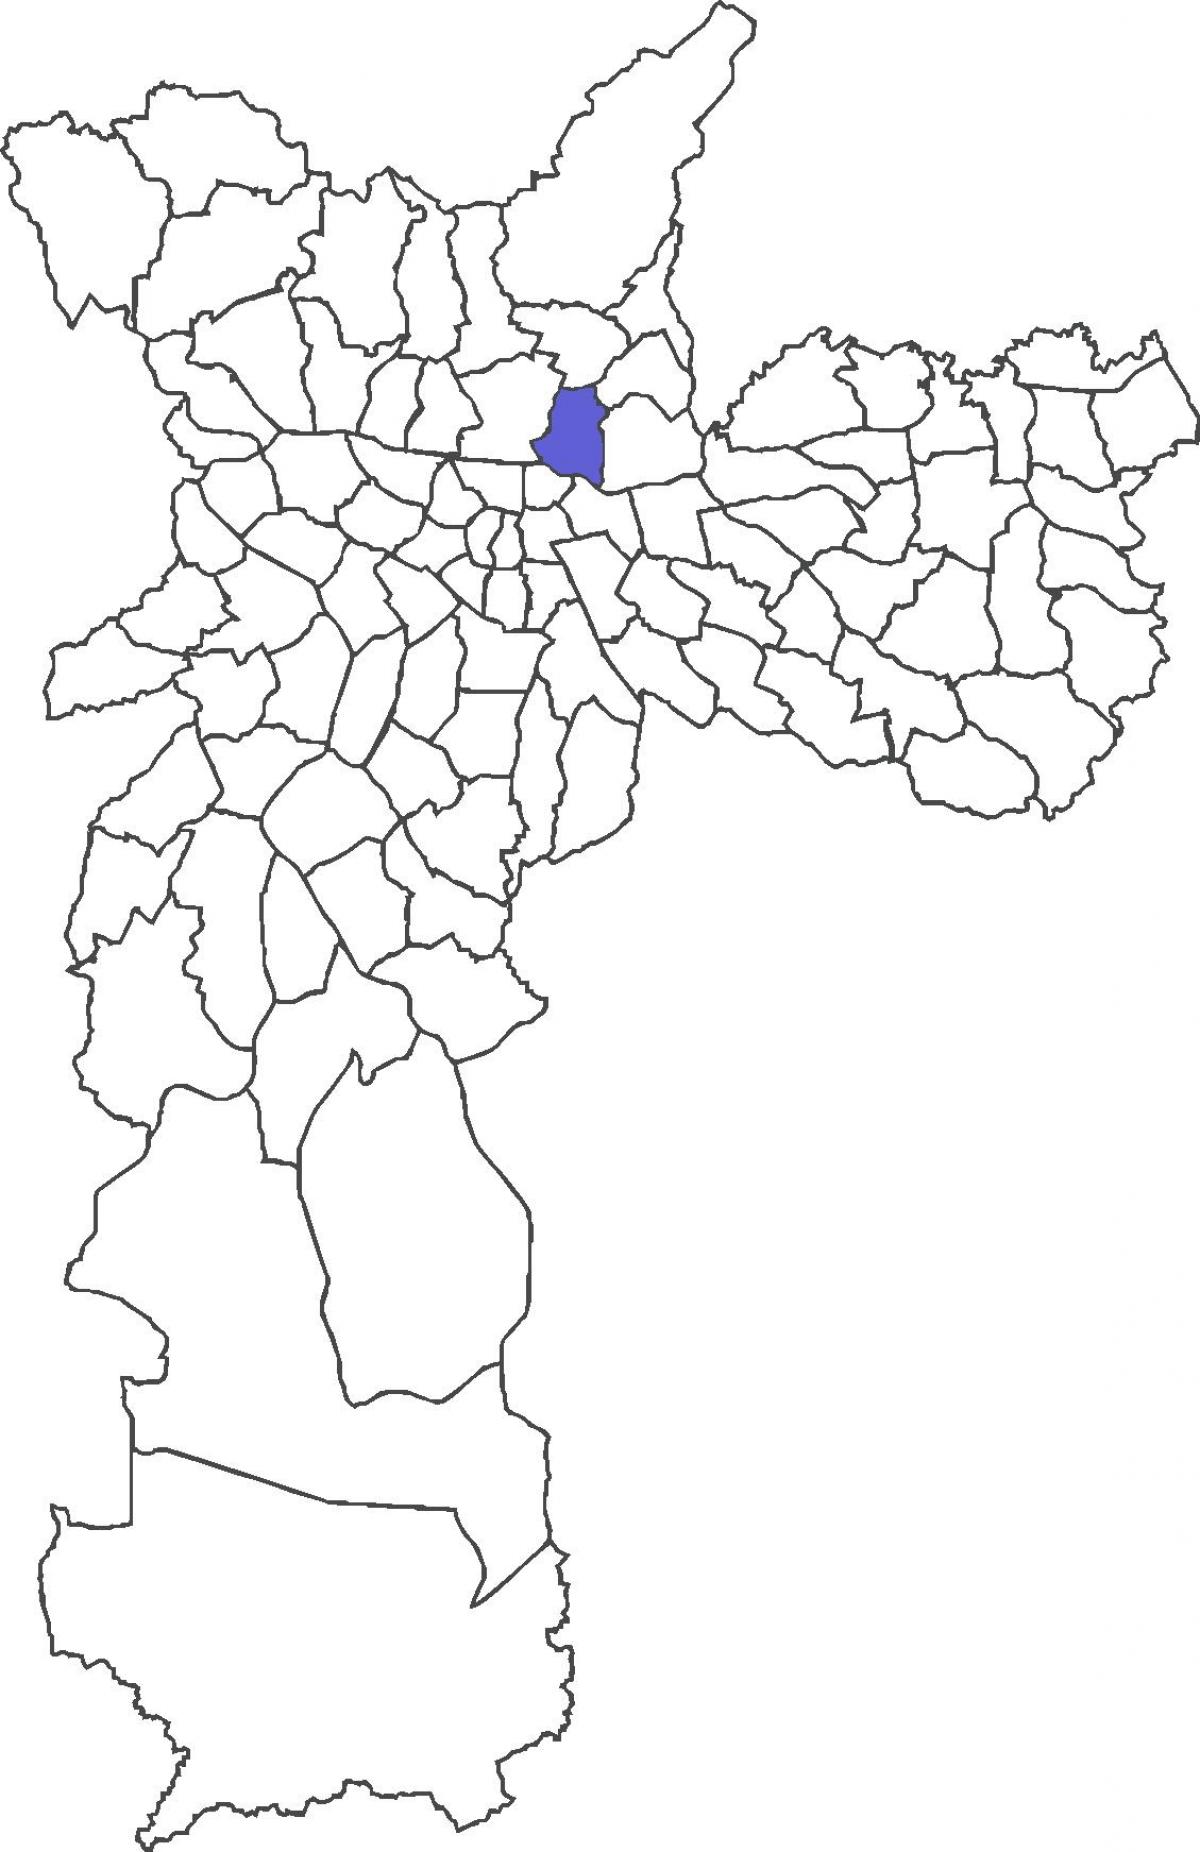 რუკა Vila Guilherme უბანი